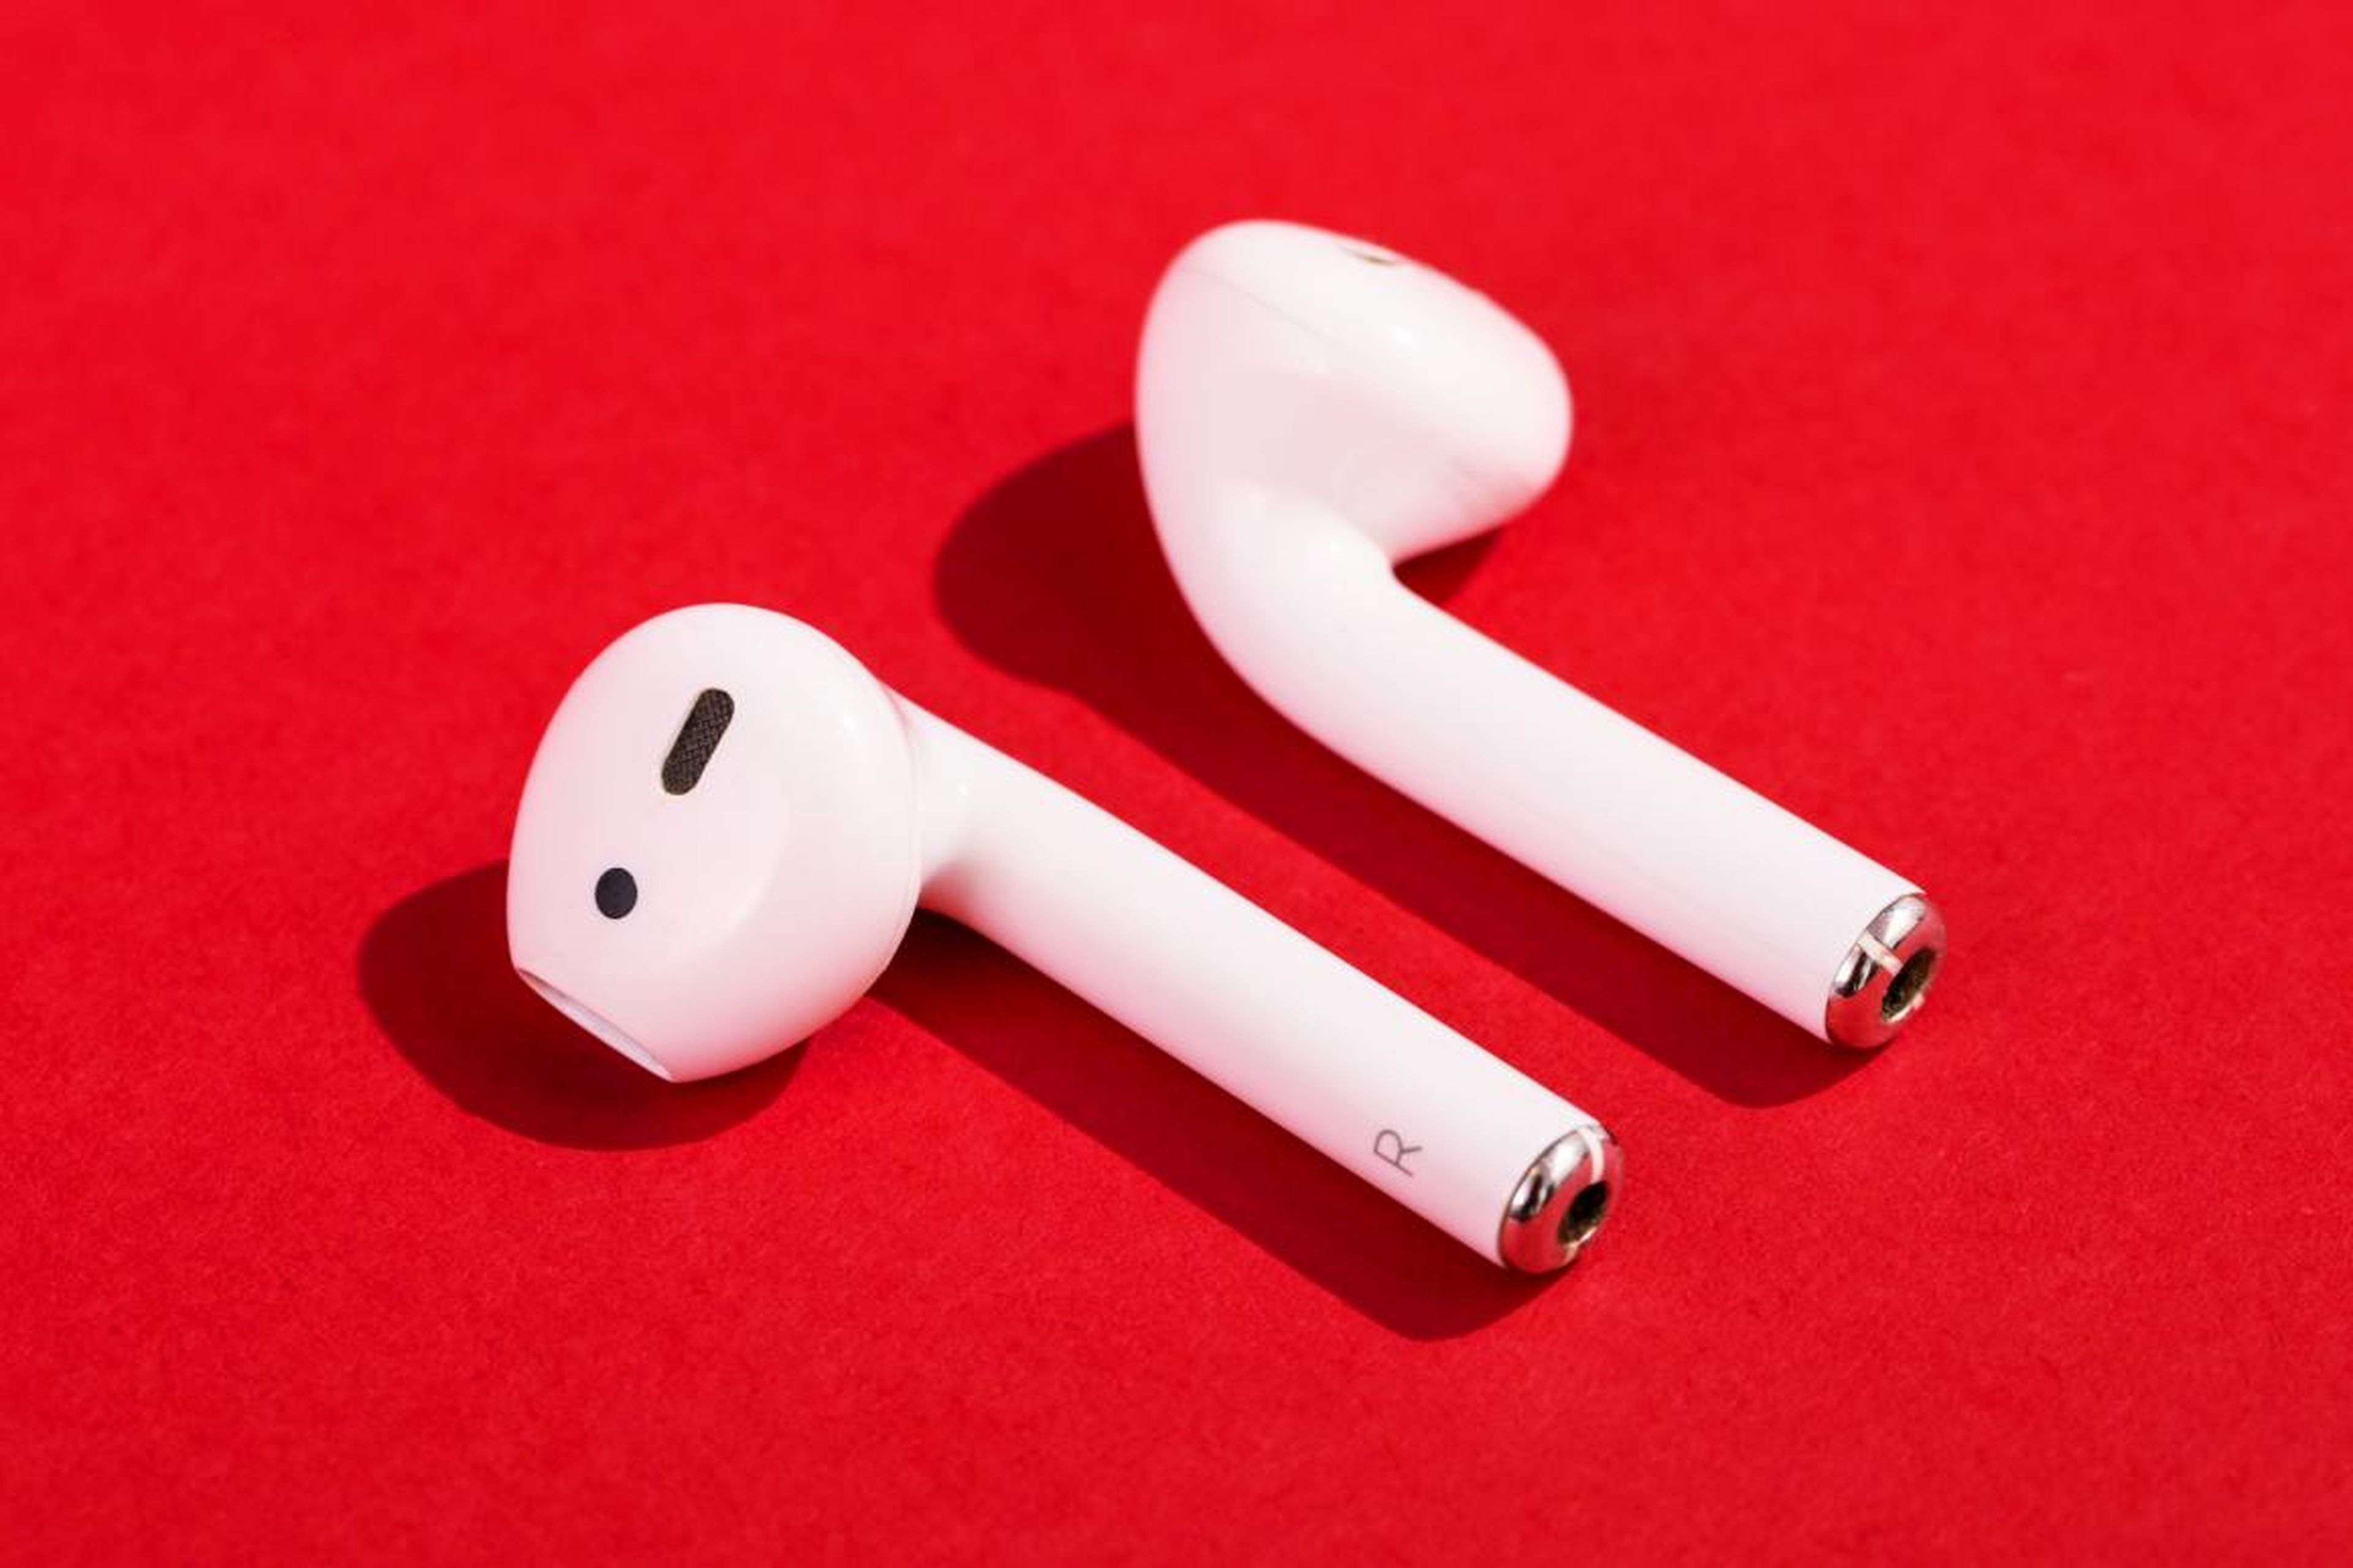 Los AirPods se parecen mucho a los EarPods que vienen en todas las cajas de los iPhone — eso sí, no tienen cable